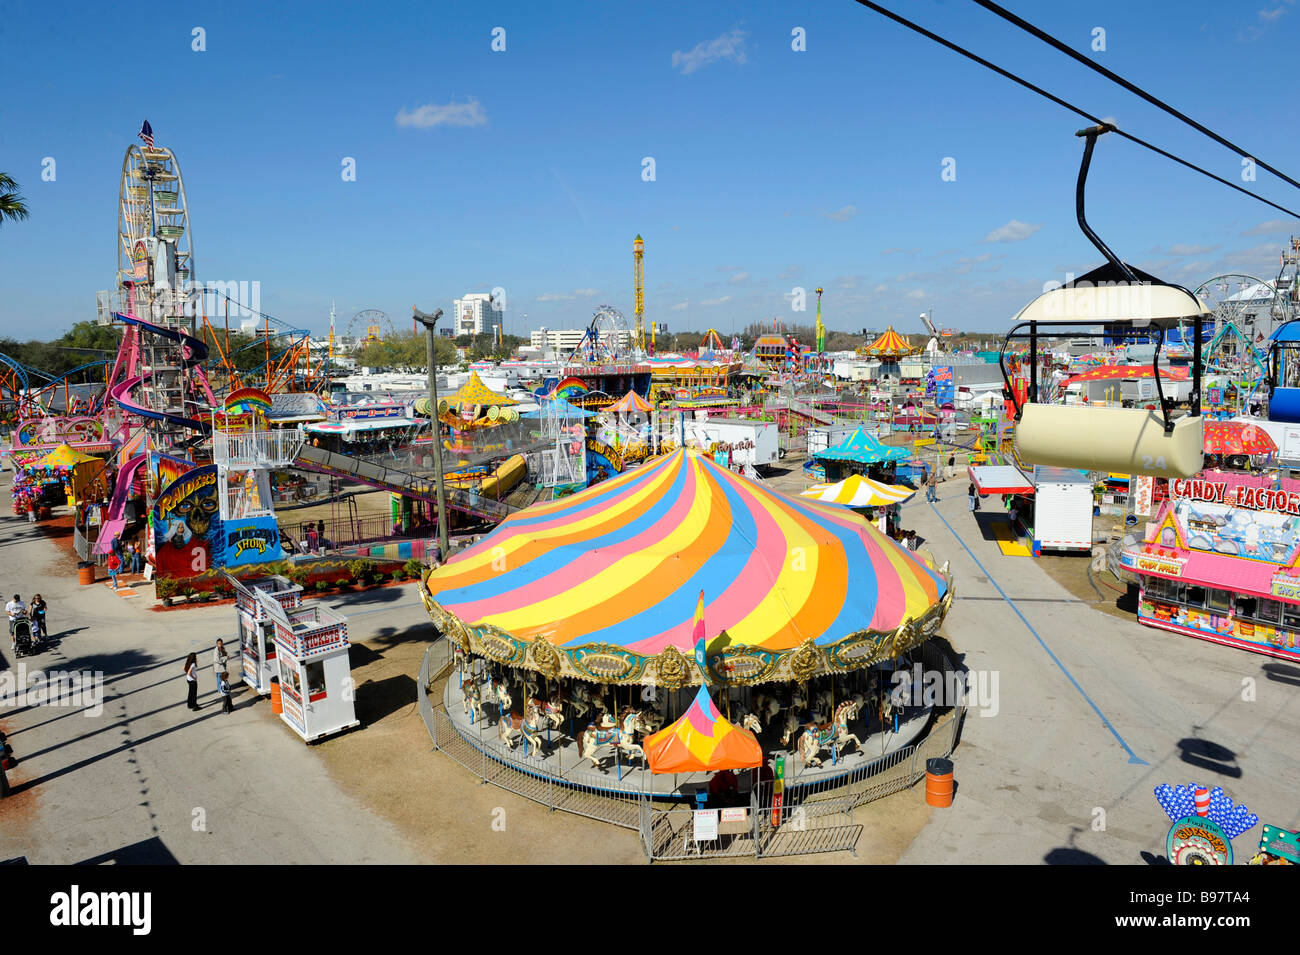 Midway at Florida State Fairgrounds Tampa fair Stock Photo Alamy